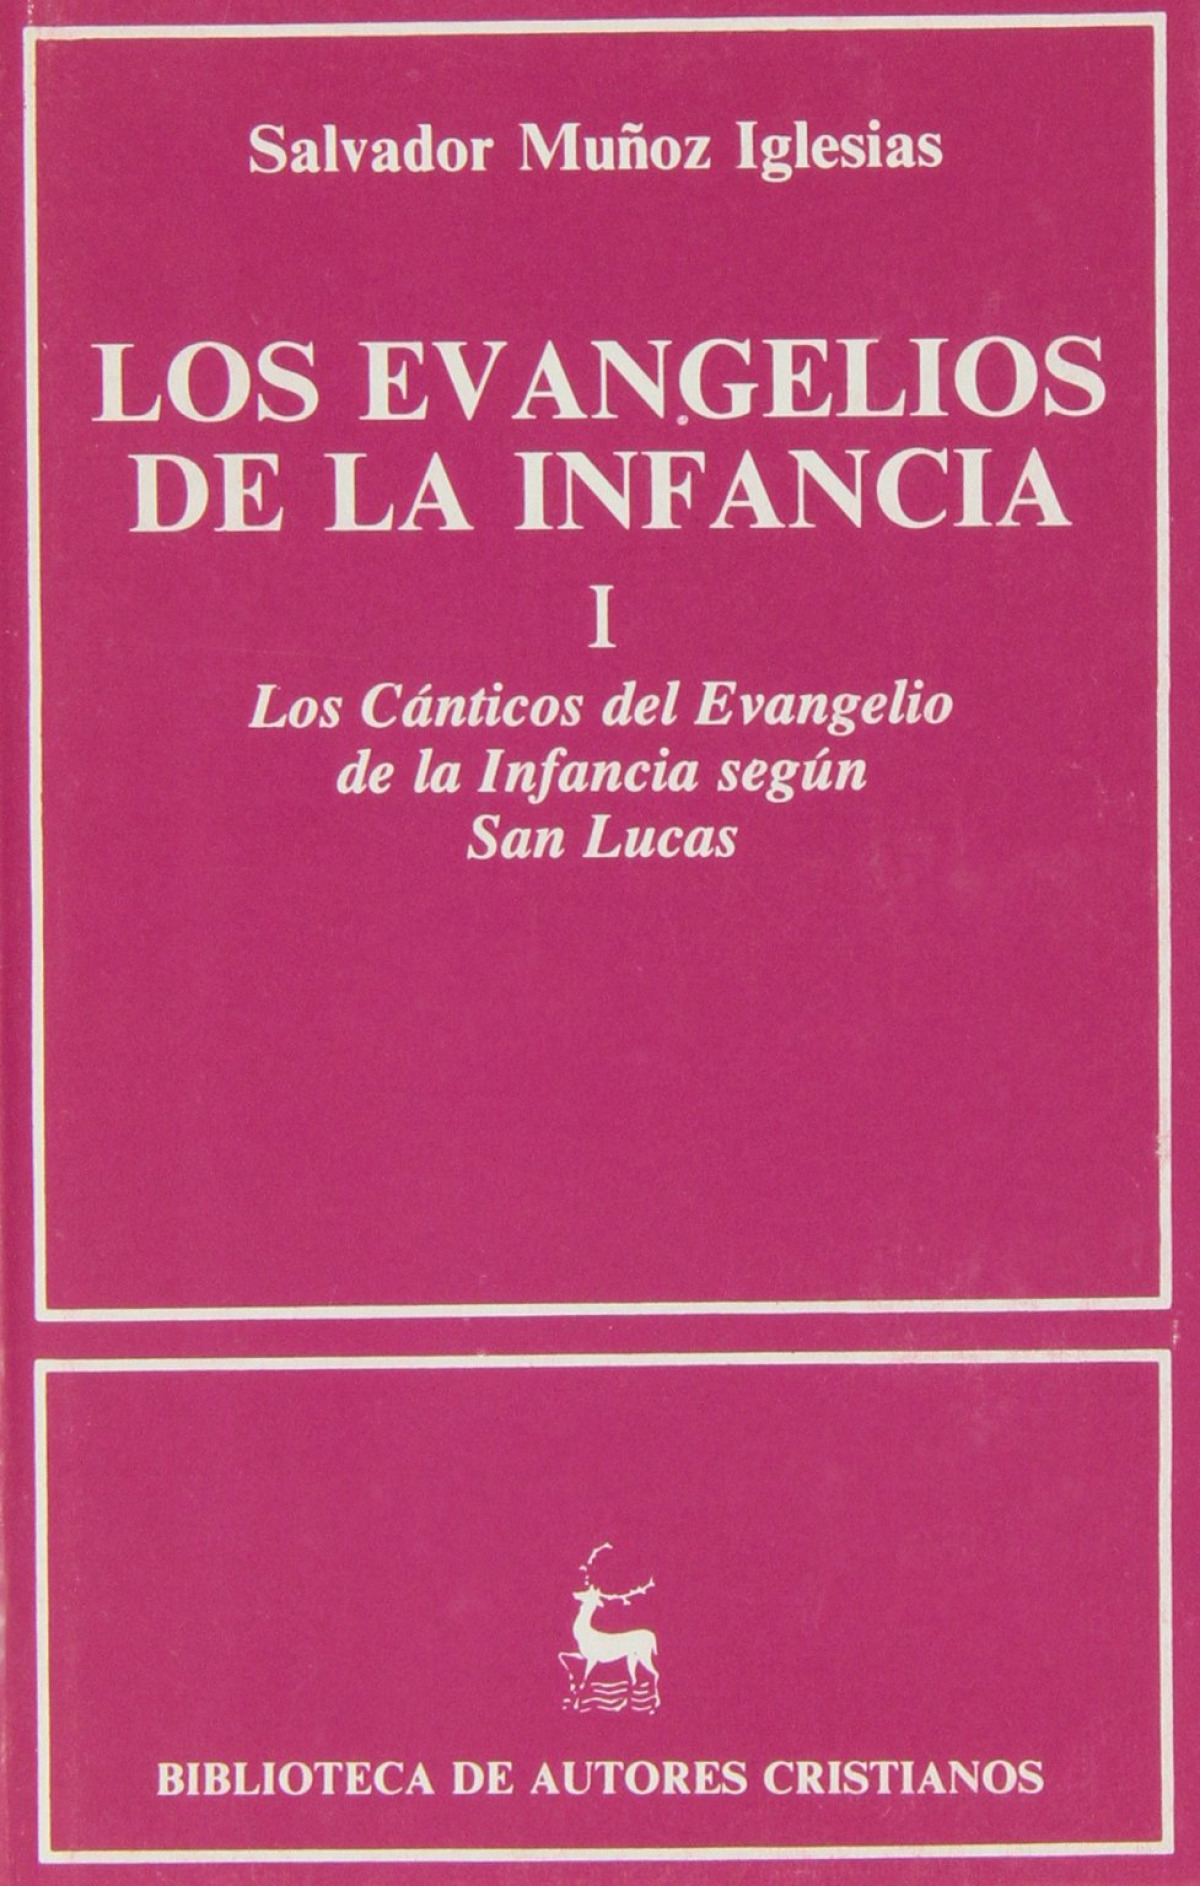 Los Evangelios de la infancia.I: Los cánticos del Evangelio de la infancia según San Lucas - Muñoz Iglesias, Salvador